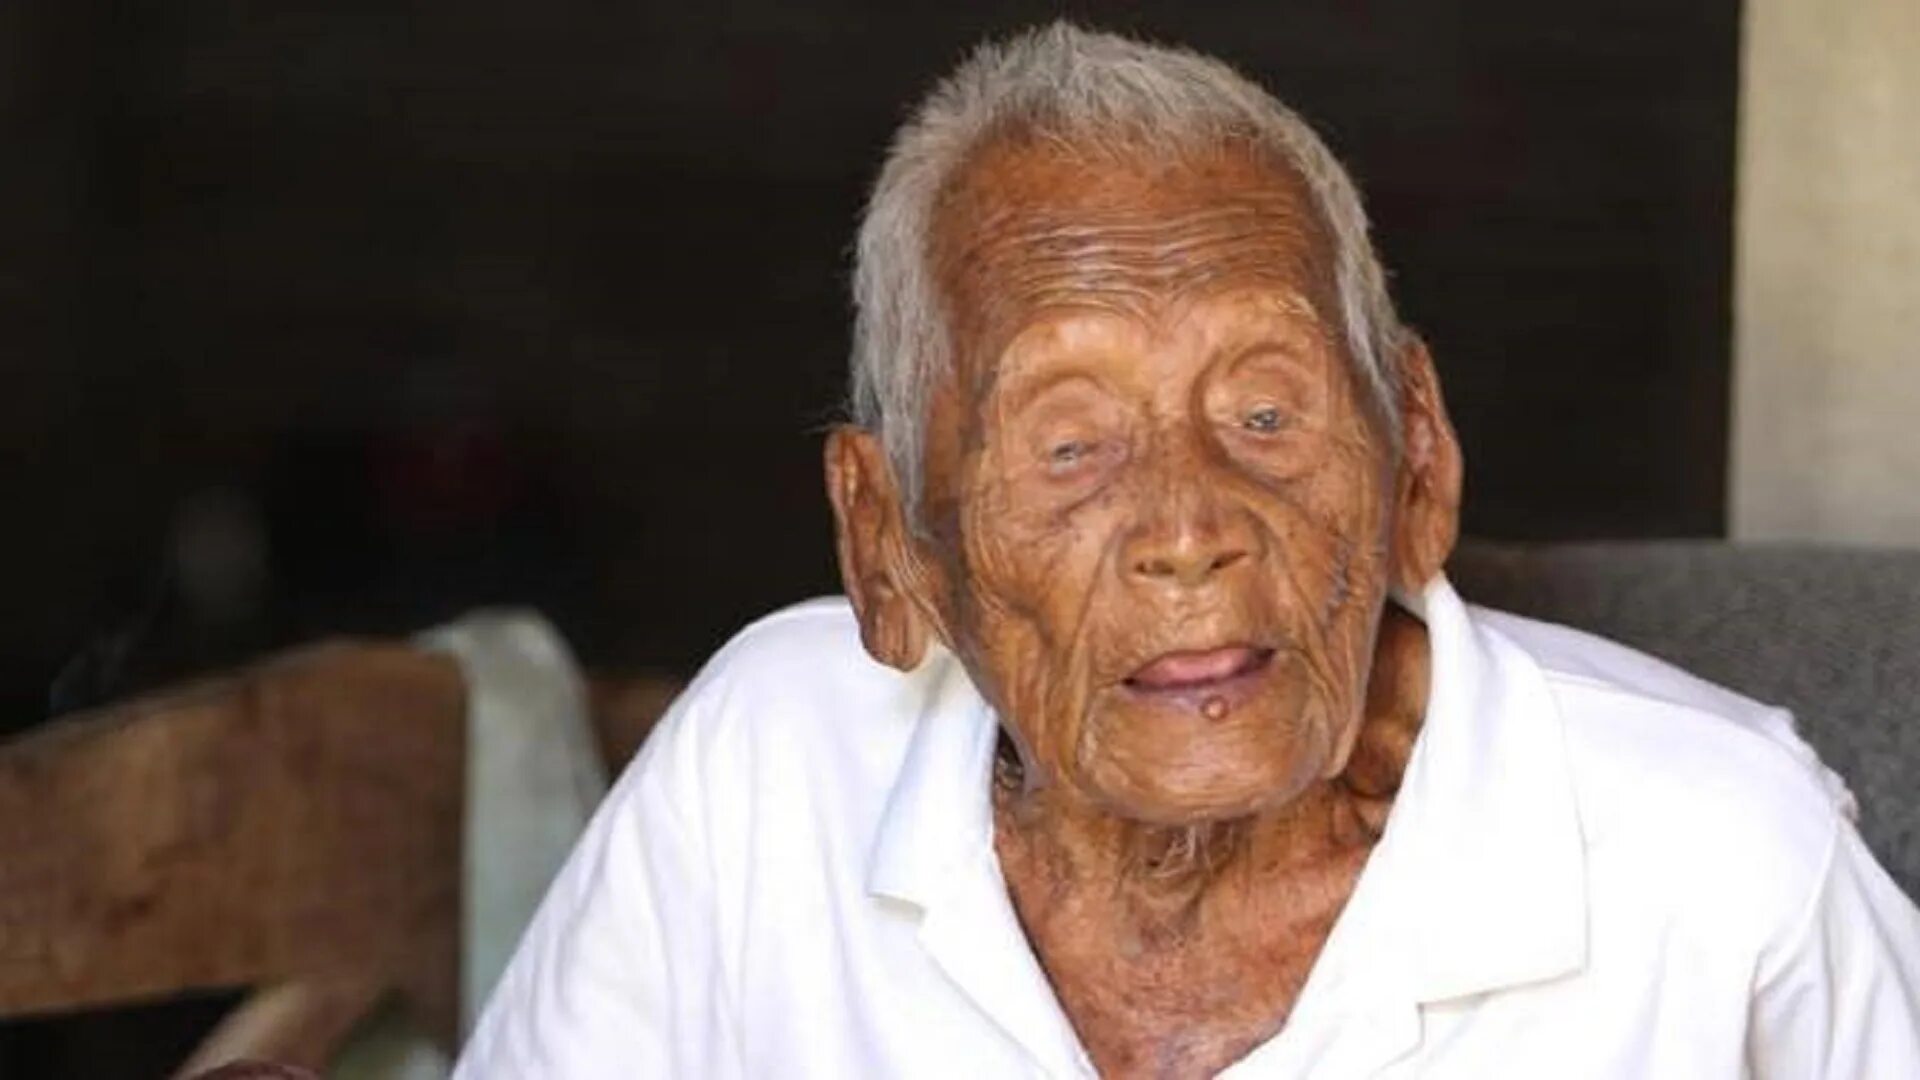 63 года сильно. Сапарман Содимеджо долгожитель. Самый долгожитель на земле человек.